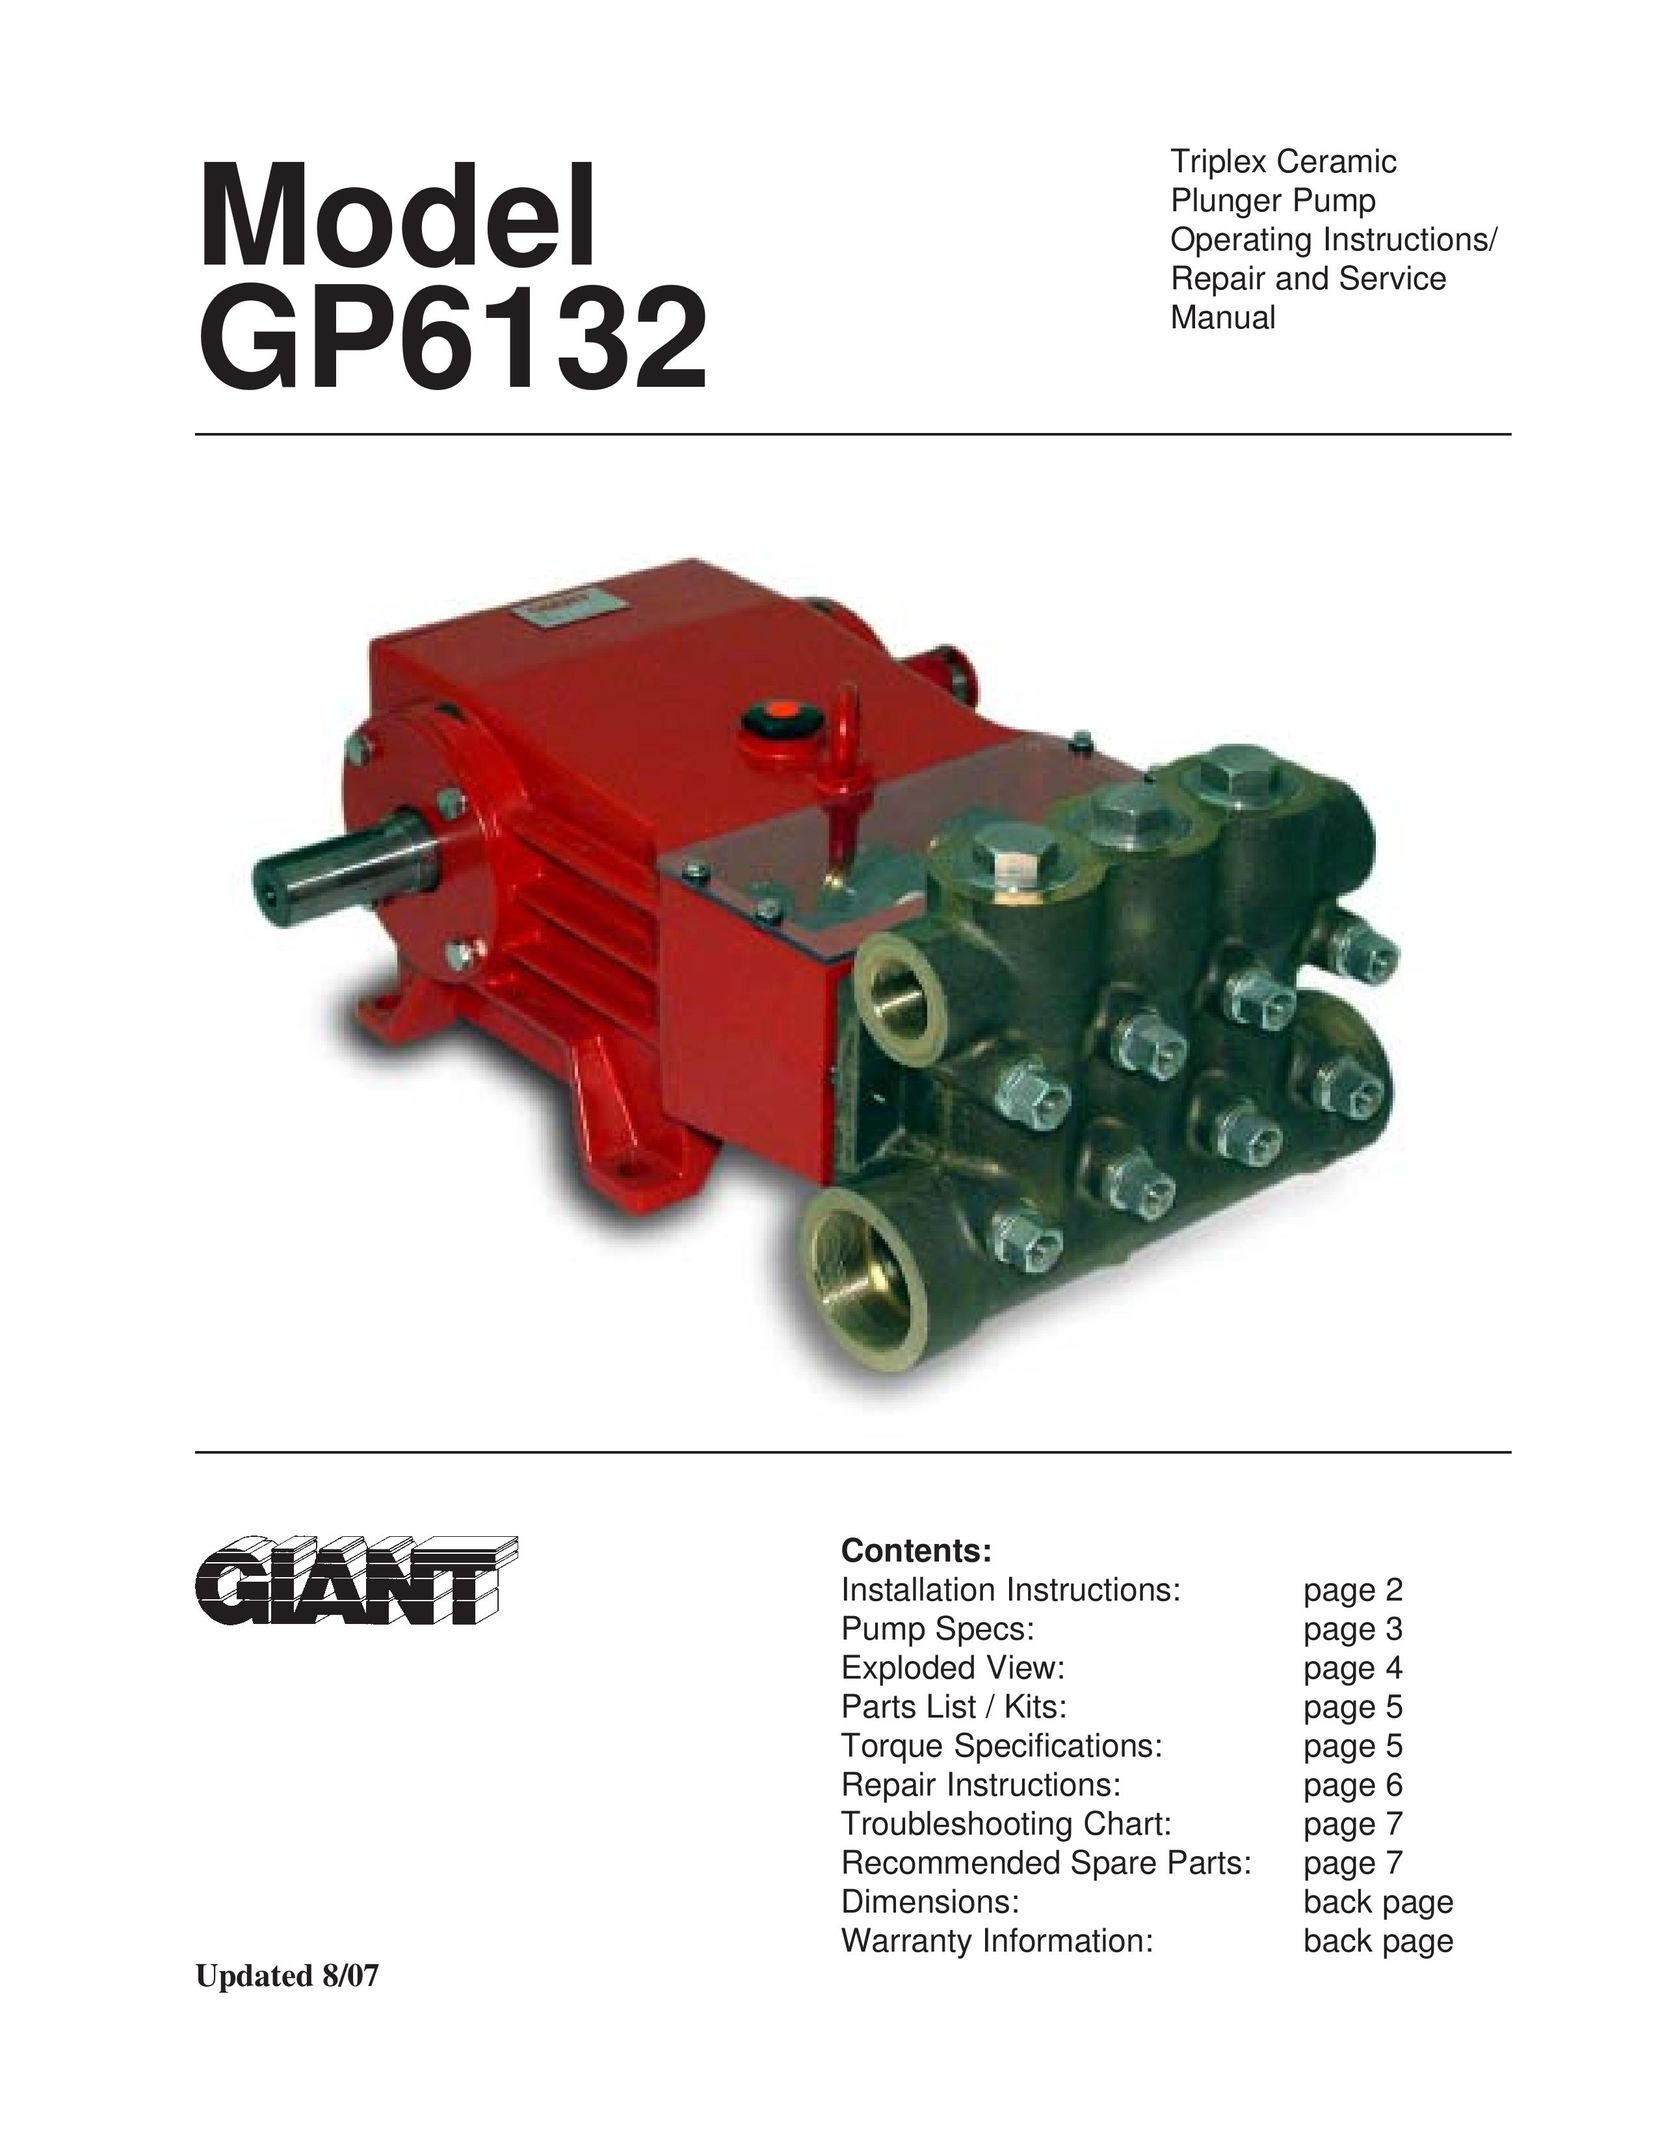 Giant GP6132 Water Pump User Manual